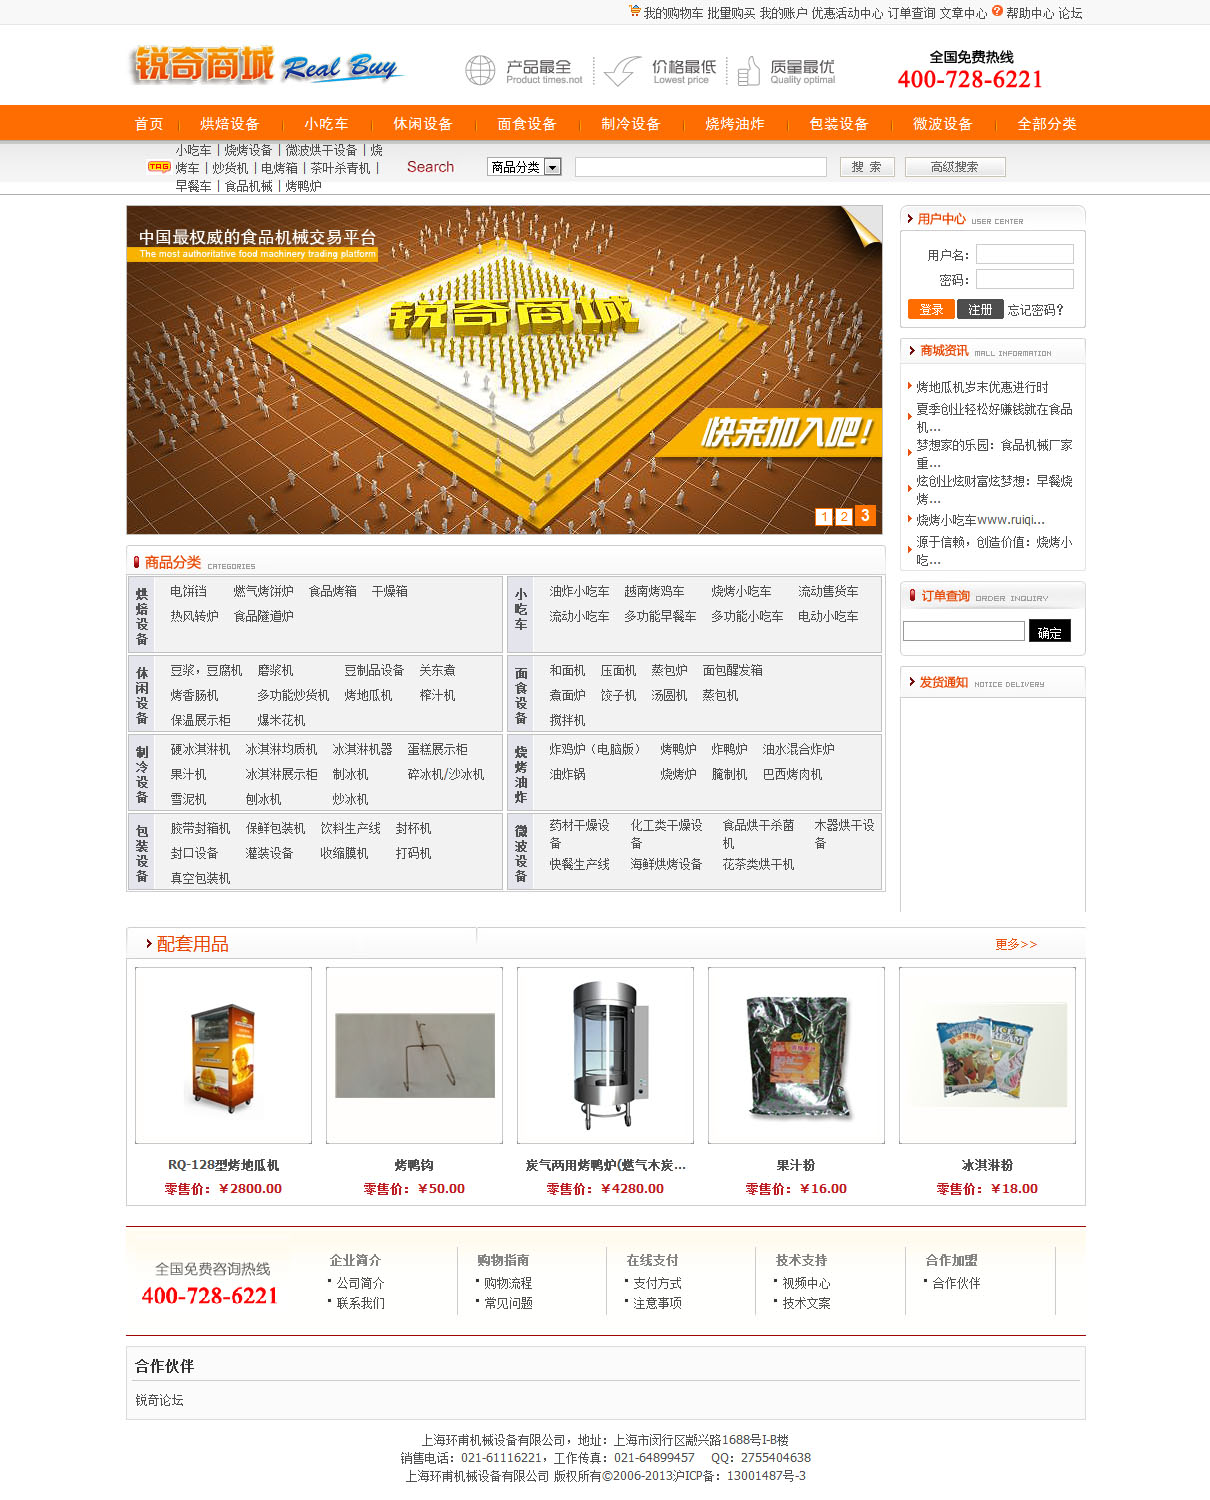 上海碧贸机械设备有限公司网站-锐奇商城